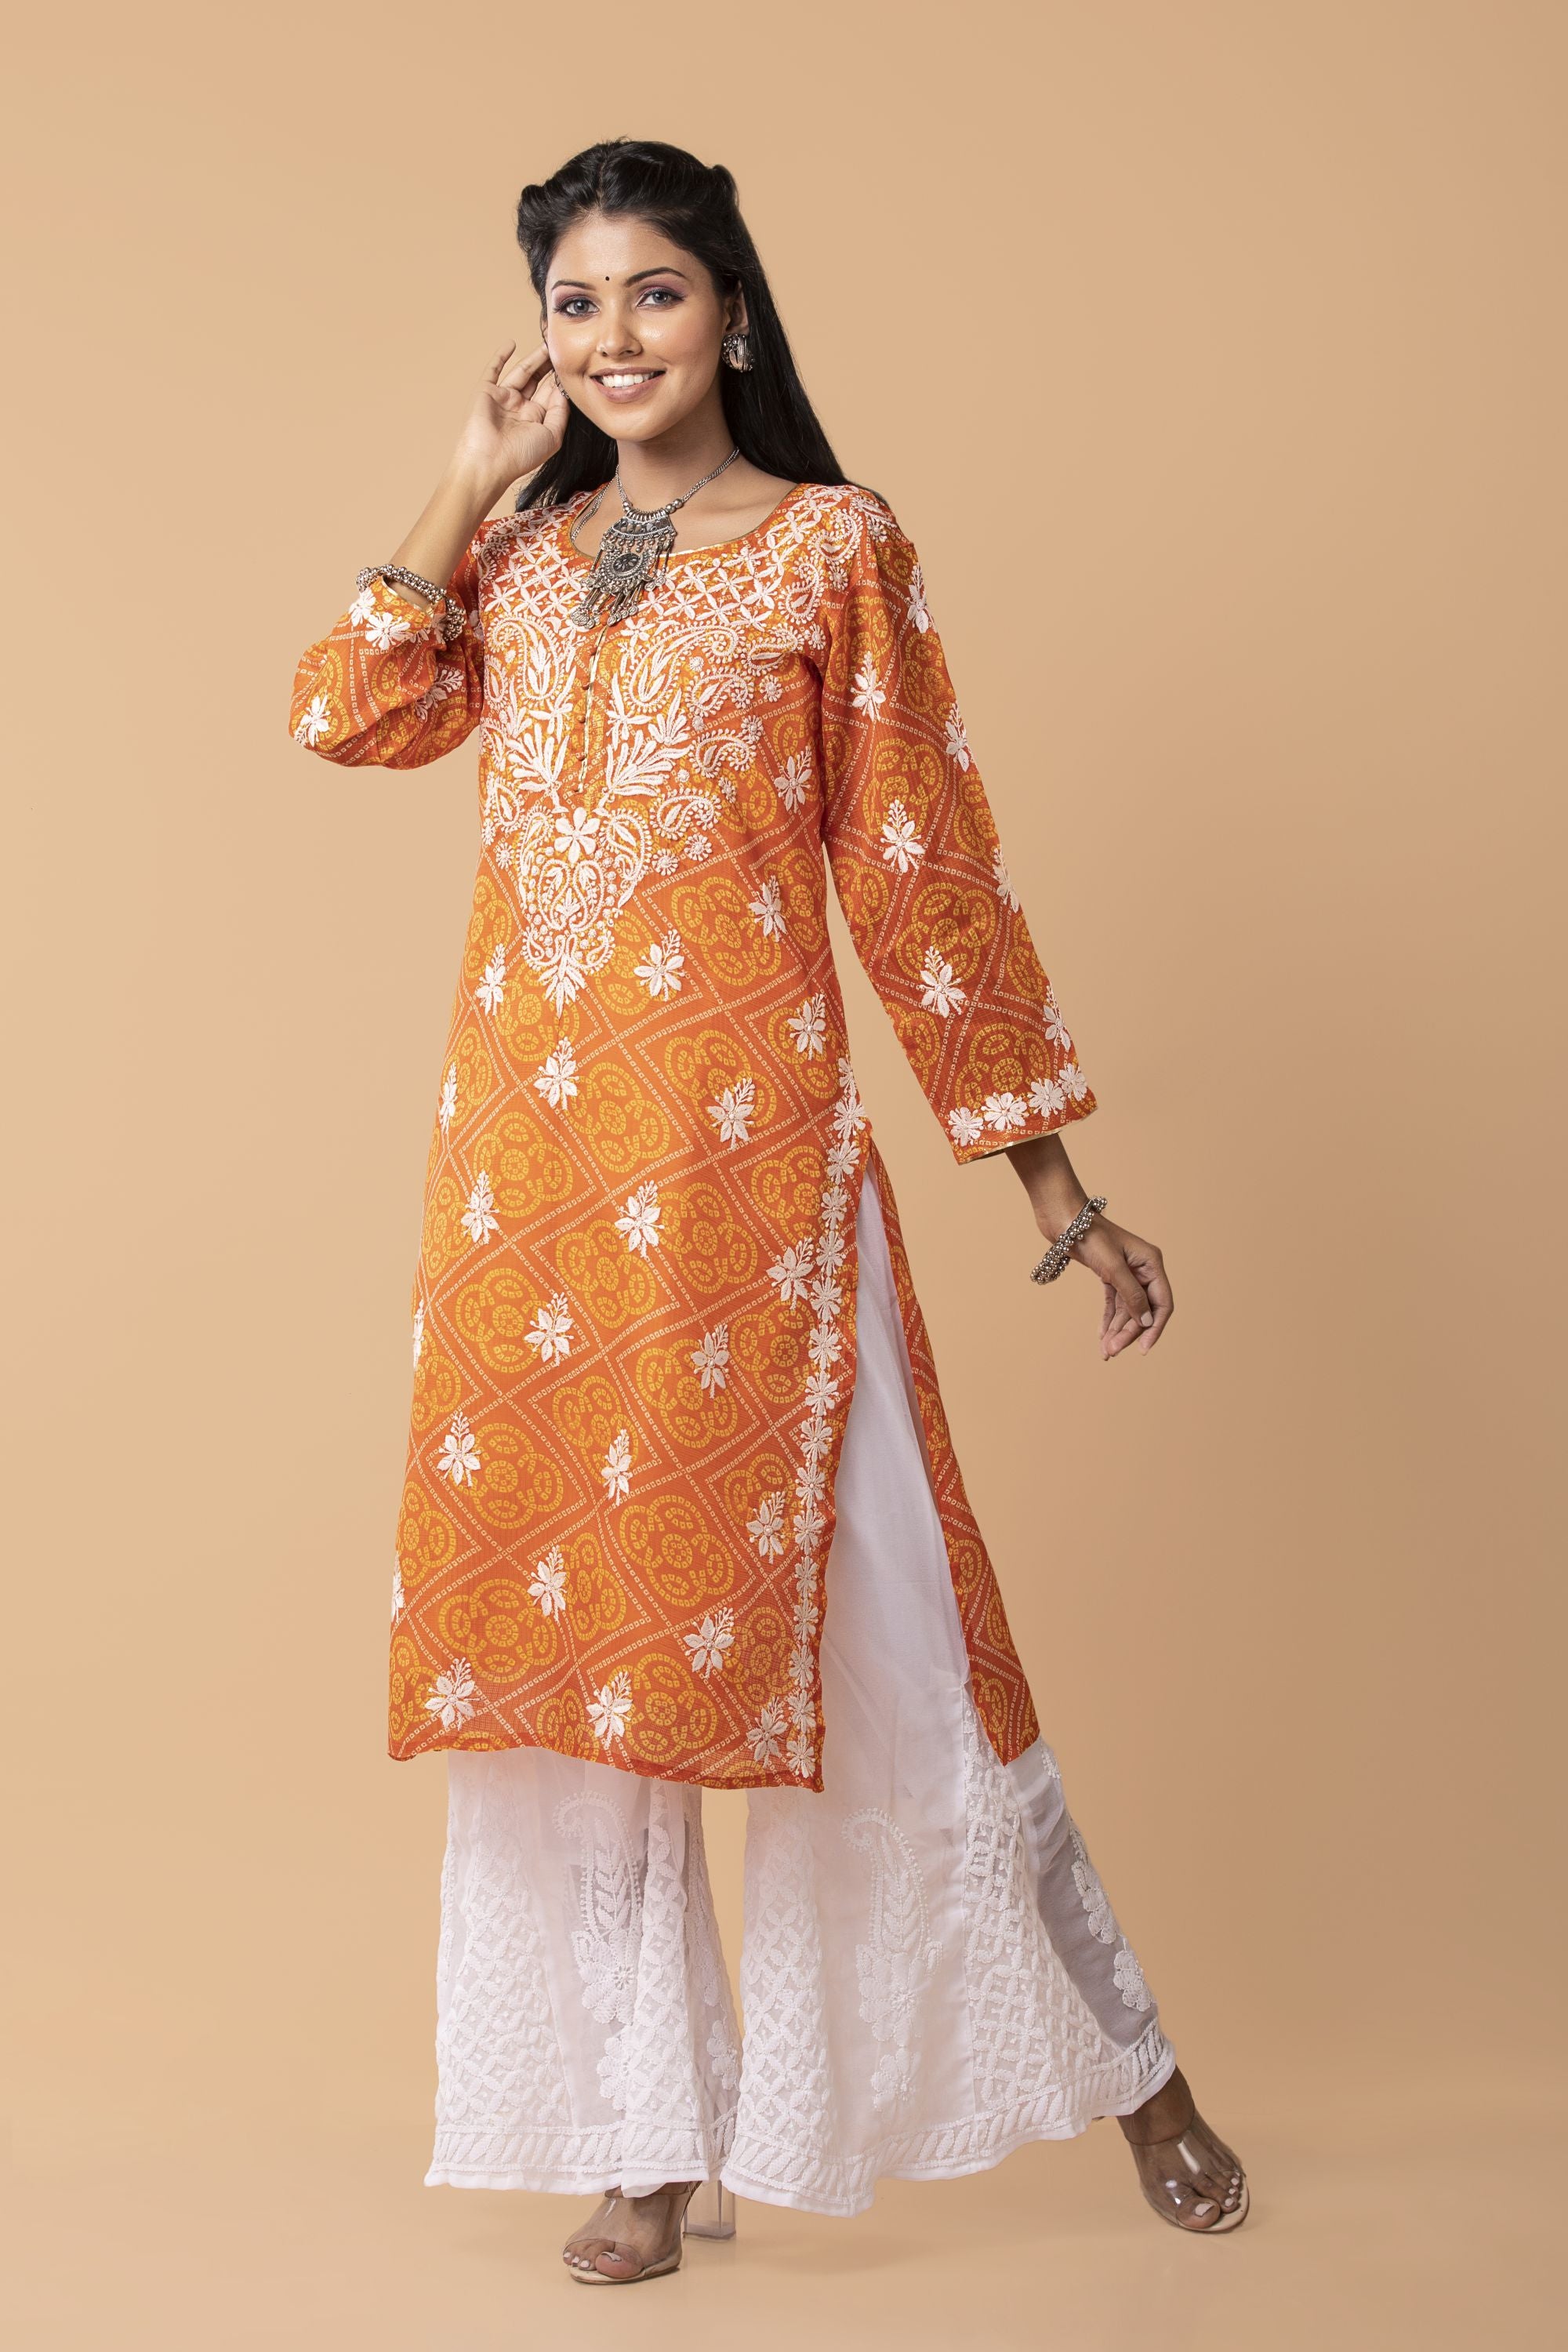 Latest Full Hand Kurtis/Anarkali for girls || Churidar/Salwar with Full  Sleeves || Trendy Shopping - YouTube